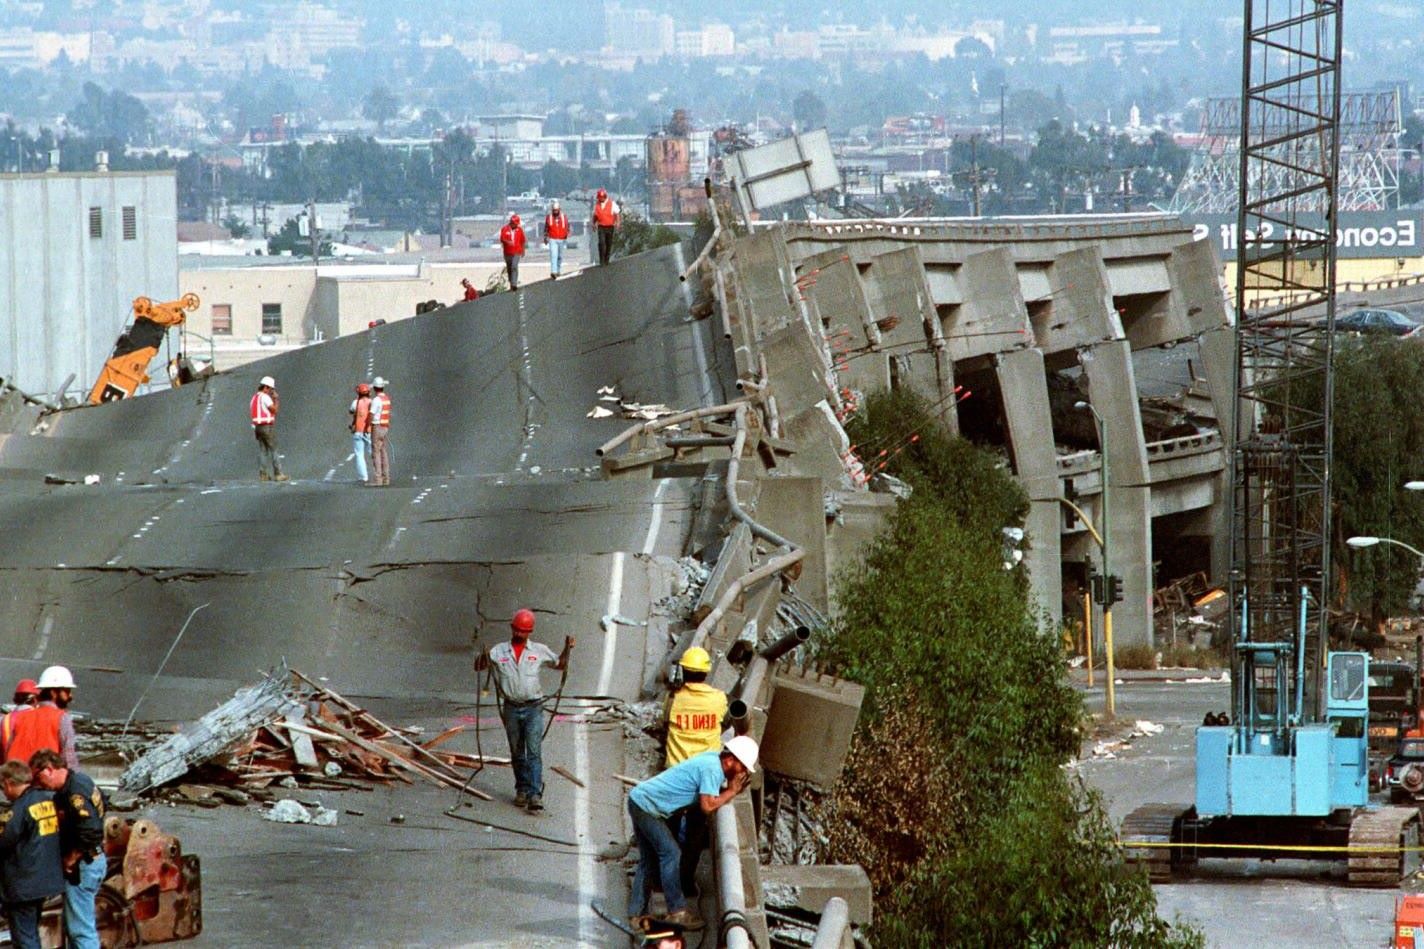 12-facts-about-loma-prieta-earthquake-1989